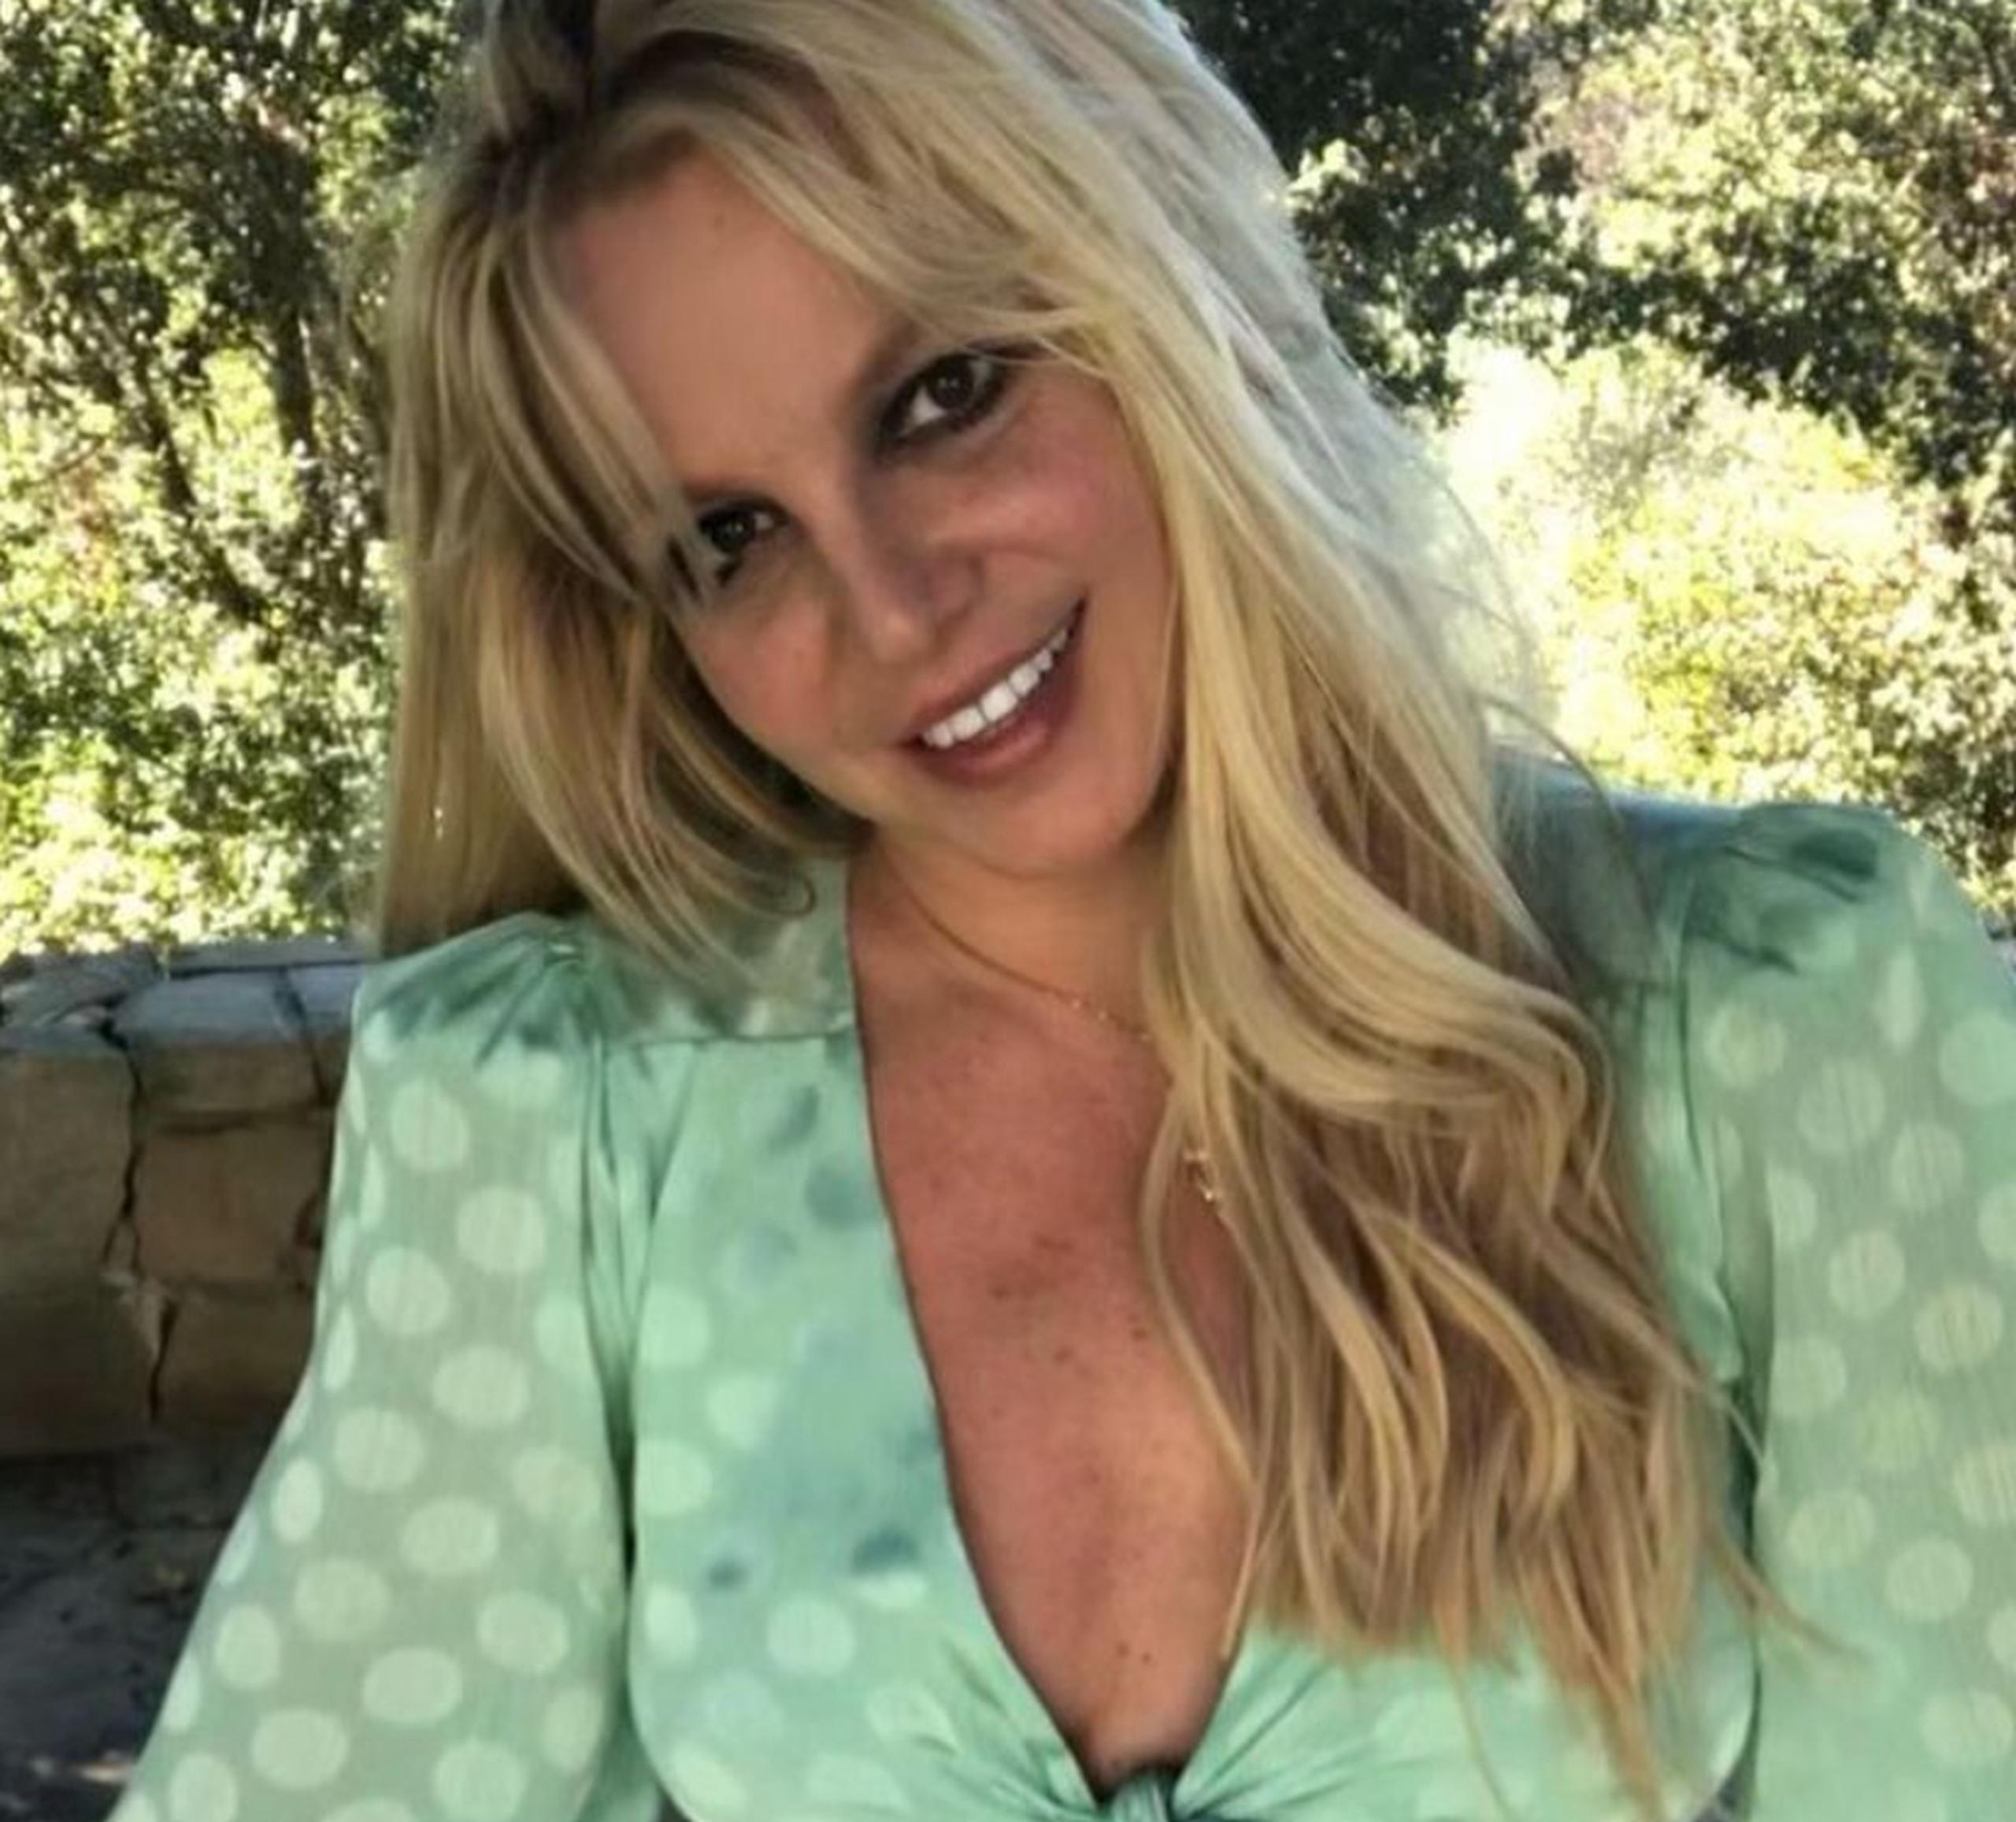 La cantante Britney Spears publicó una serie de fotos y vídeos durante todo el fin de semana posterior a la determinación de una jueza de terminar con la tutela que controlaba su vida desde hace más de 13 años.